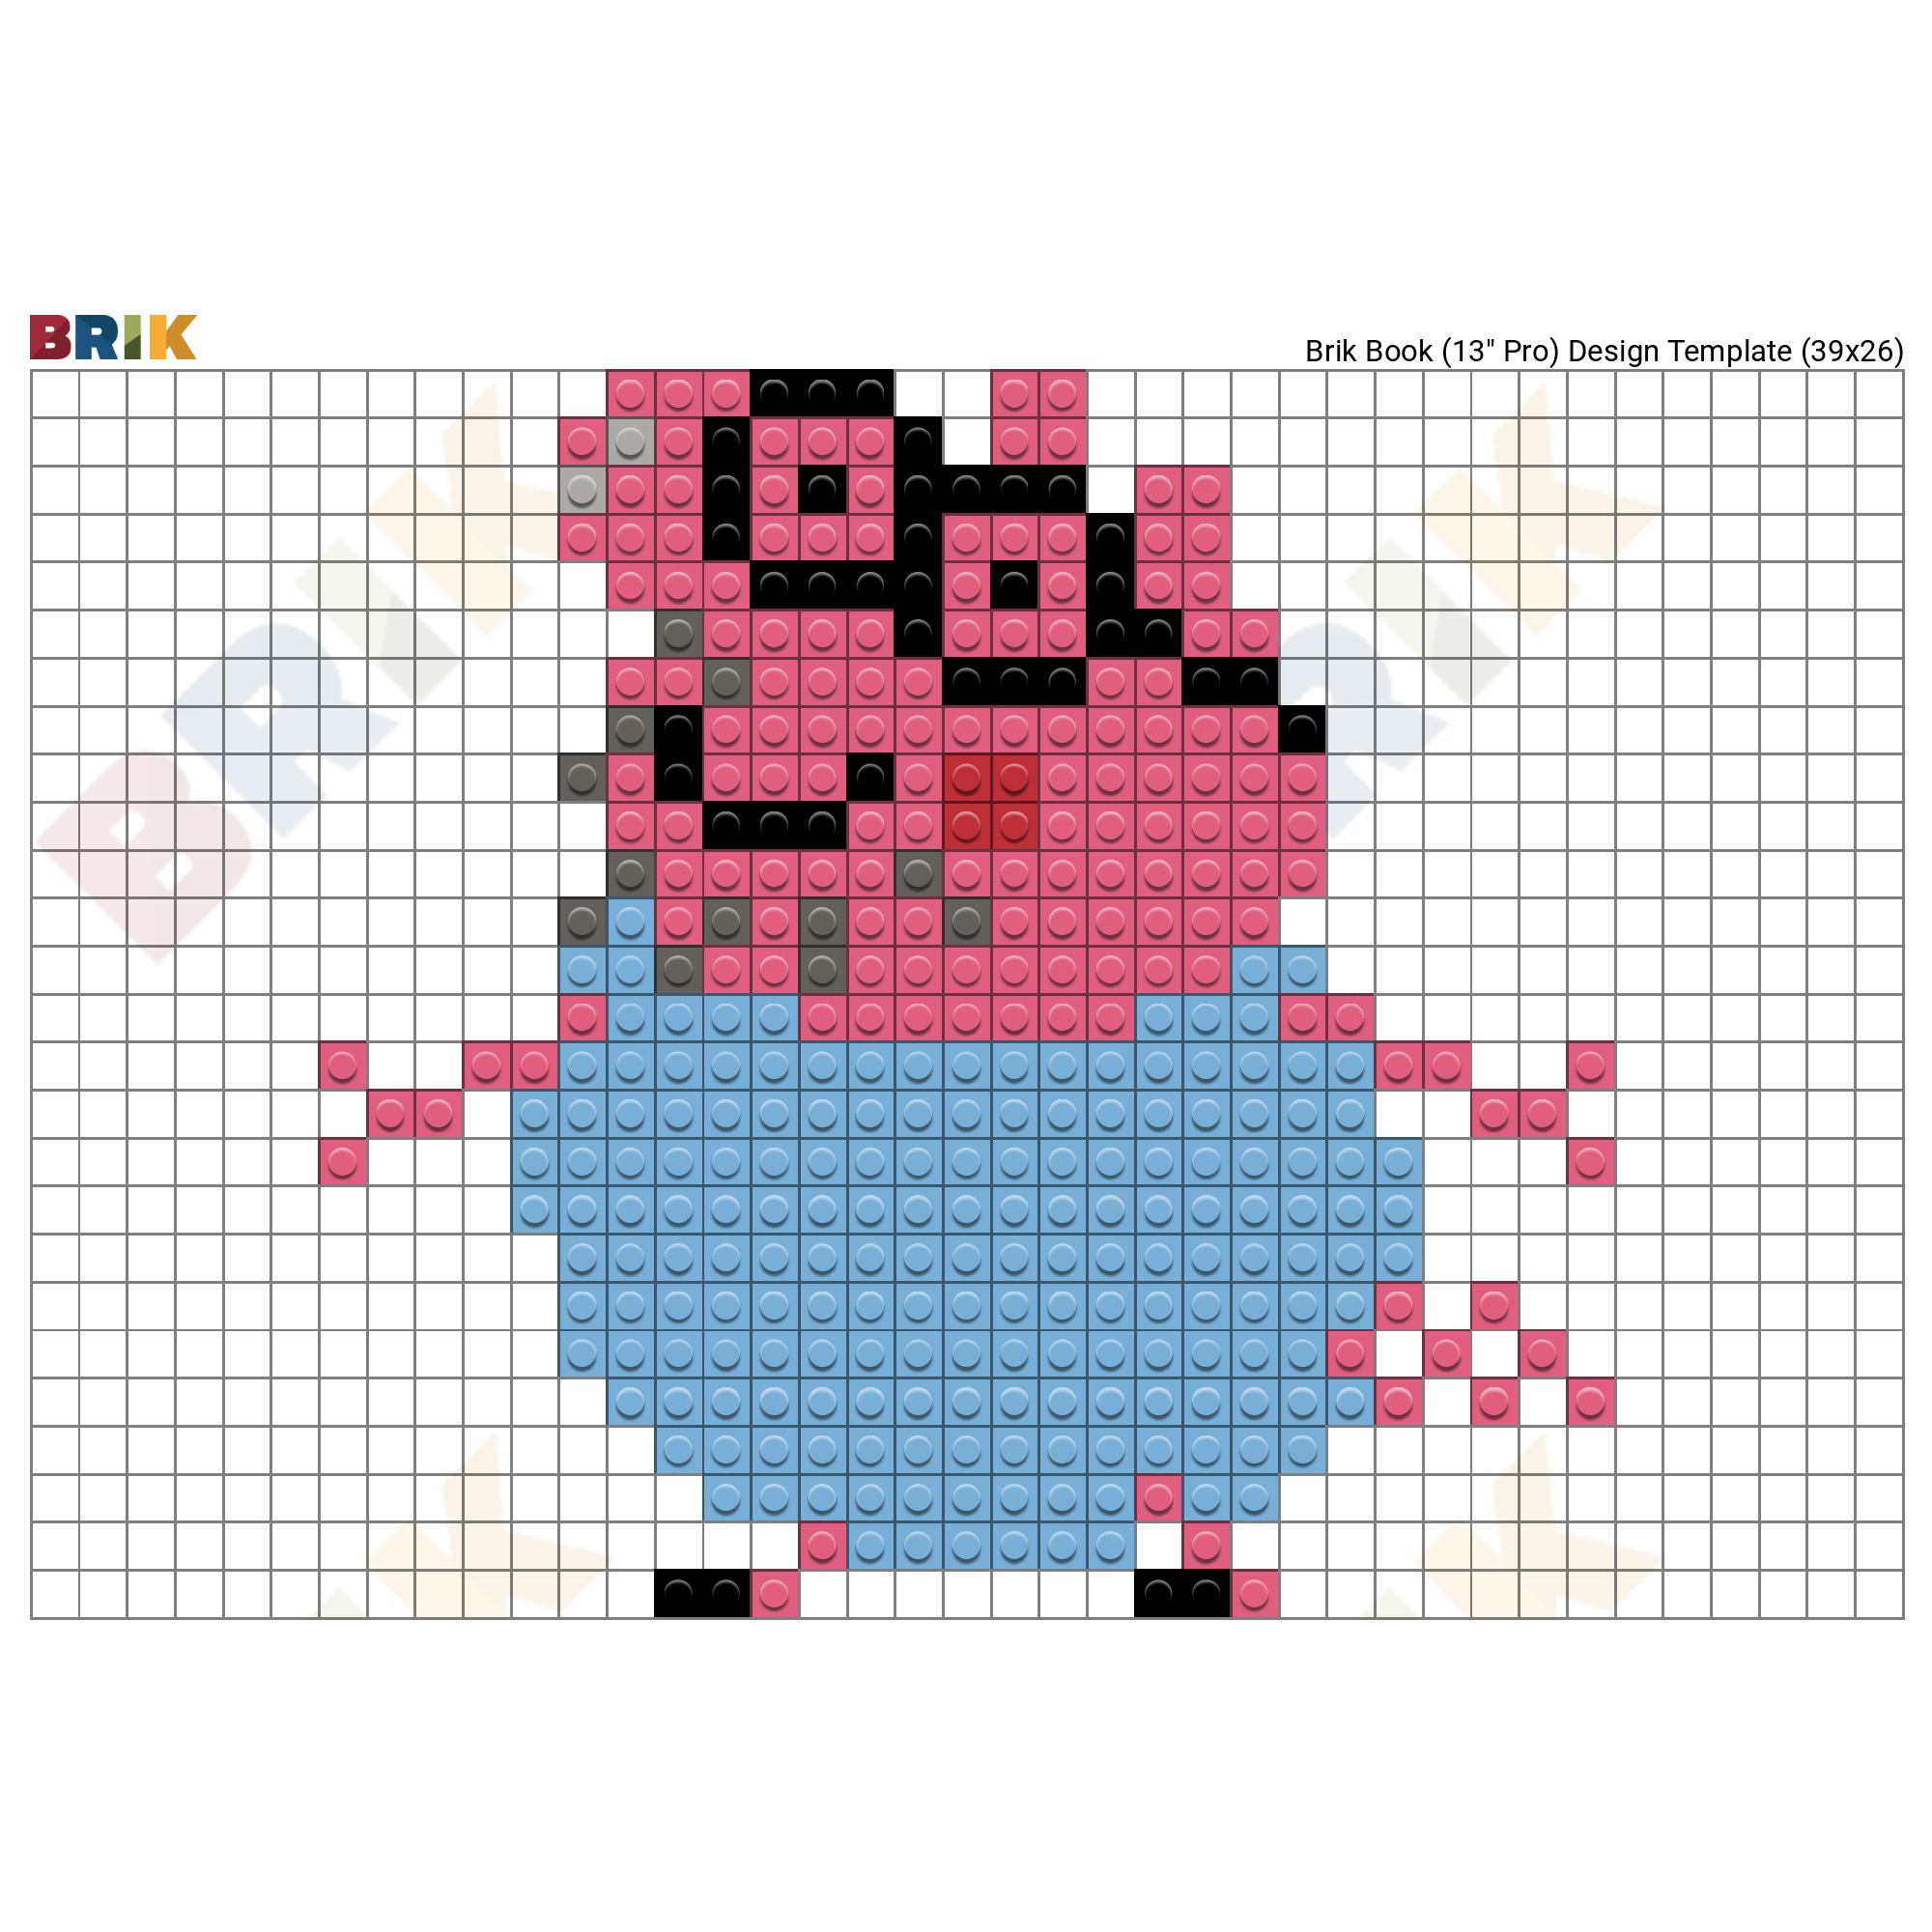 pig face minecraft pixel art